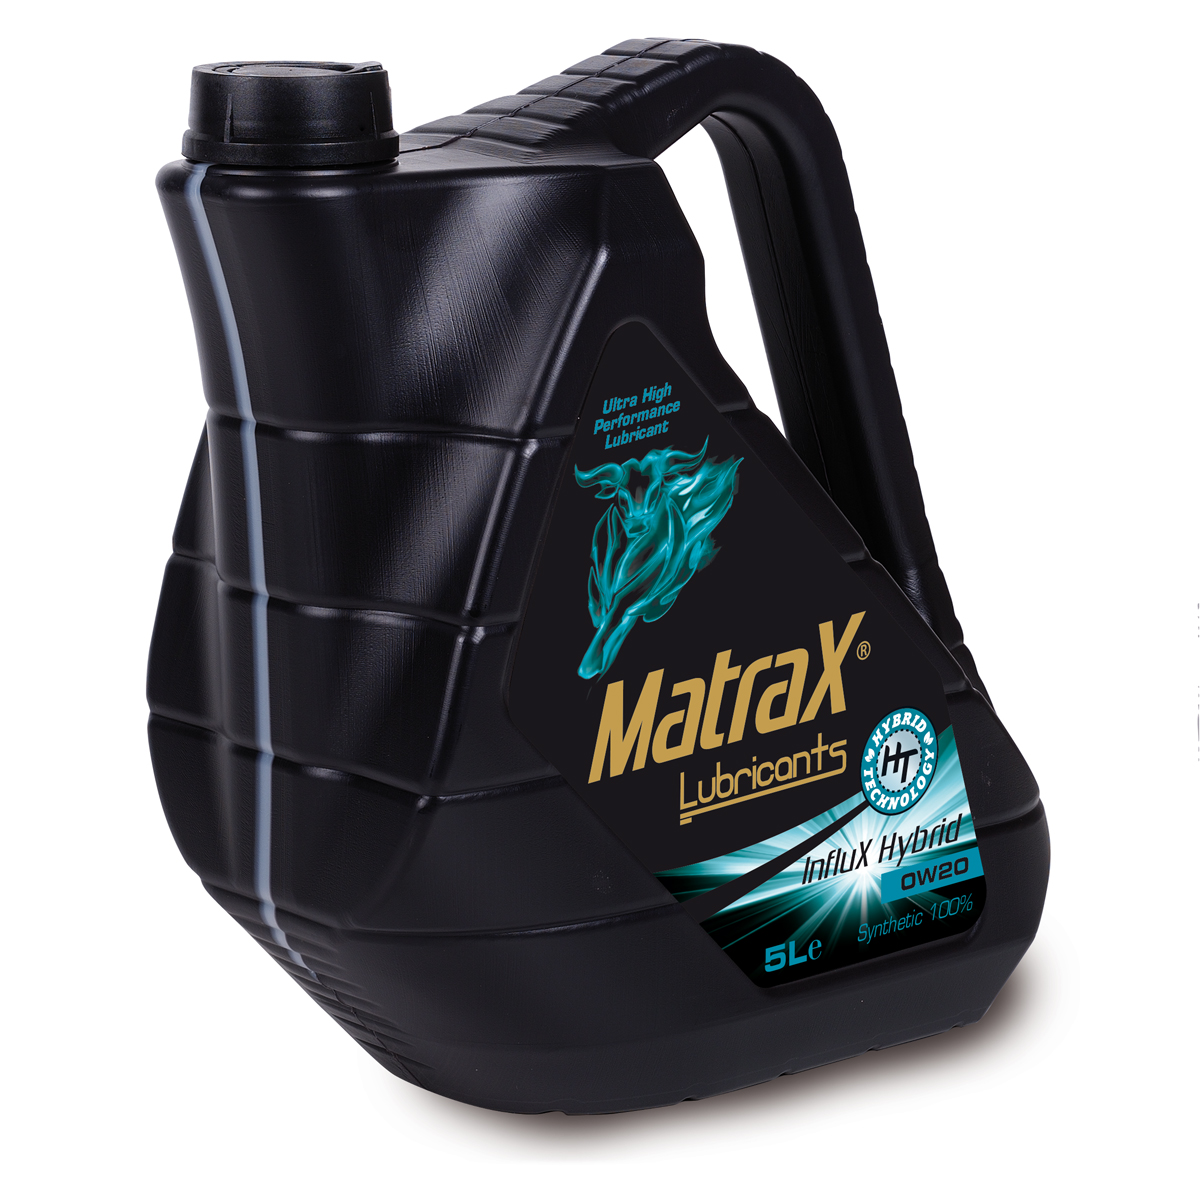 matrax-lubricants-influx-hybrid-0w20-5l